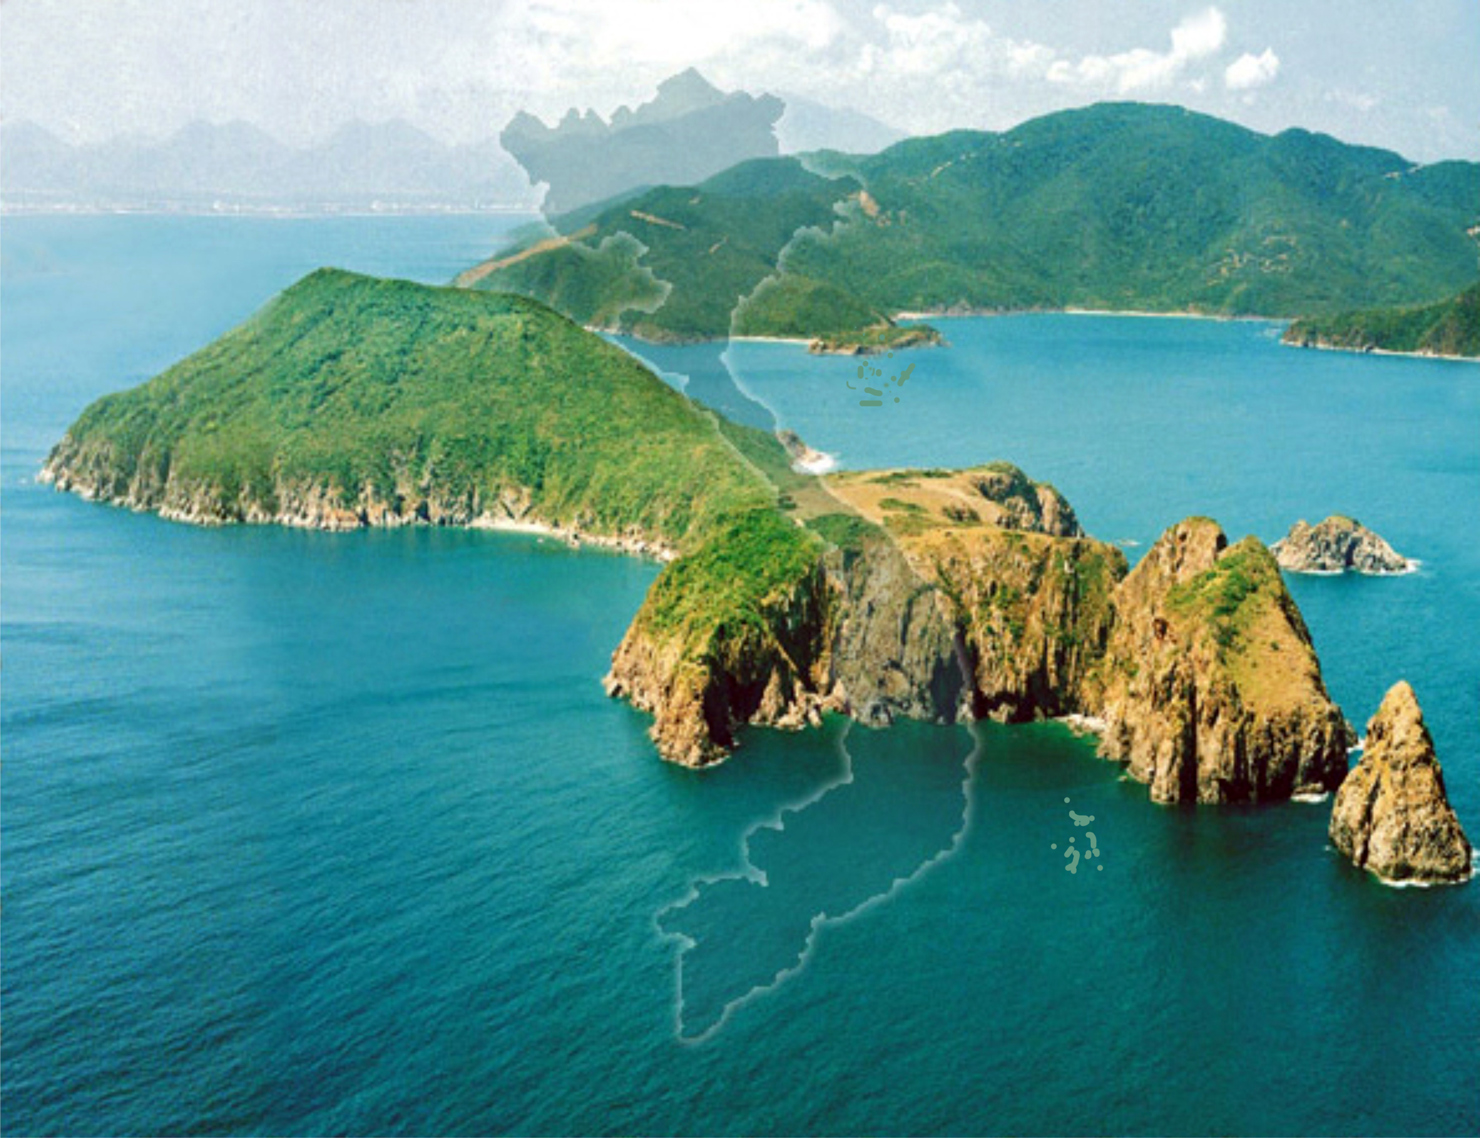  Việt Nam luôn được coi là quốc gia có thế mạnh về biển.